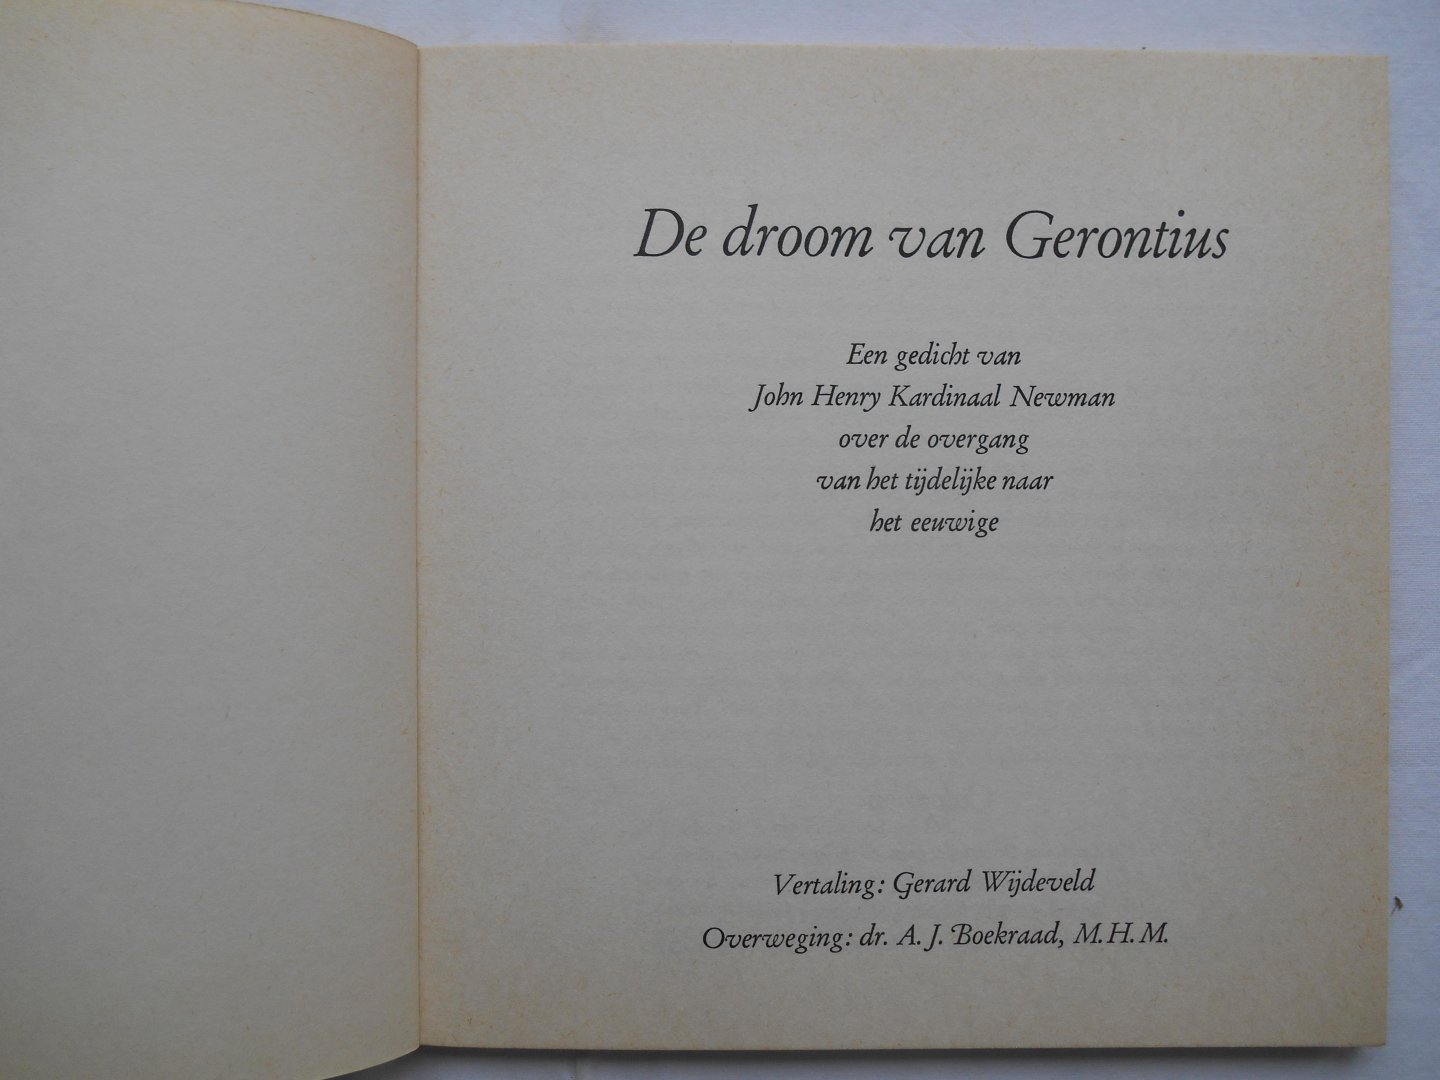 Newman, Kardinaal John Henry, vertaling Gerard Wijdeveld - De droom van Gerontius.